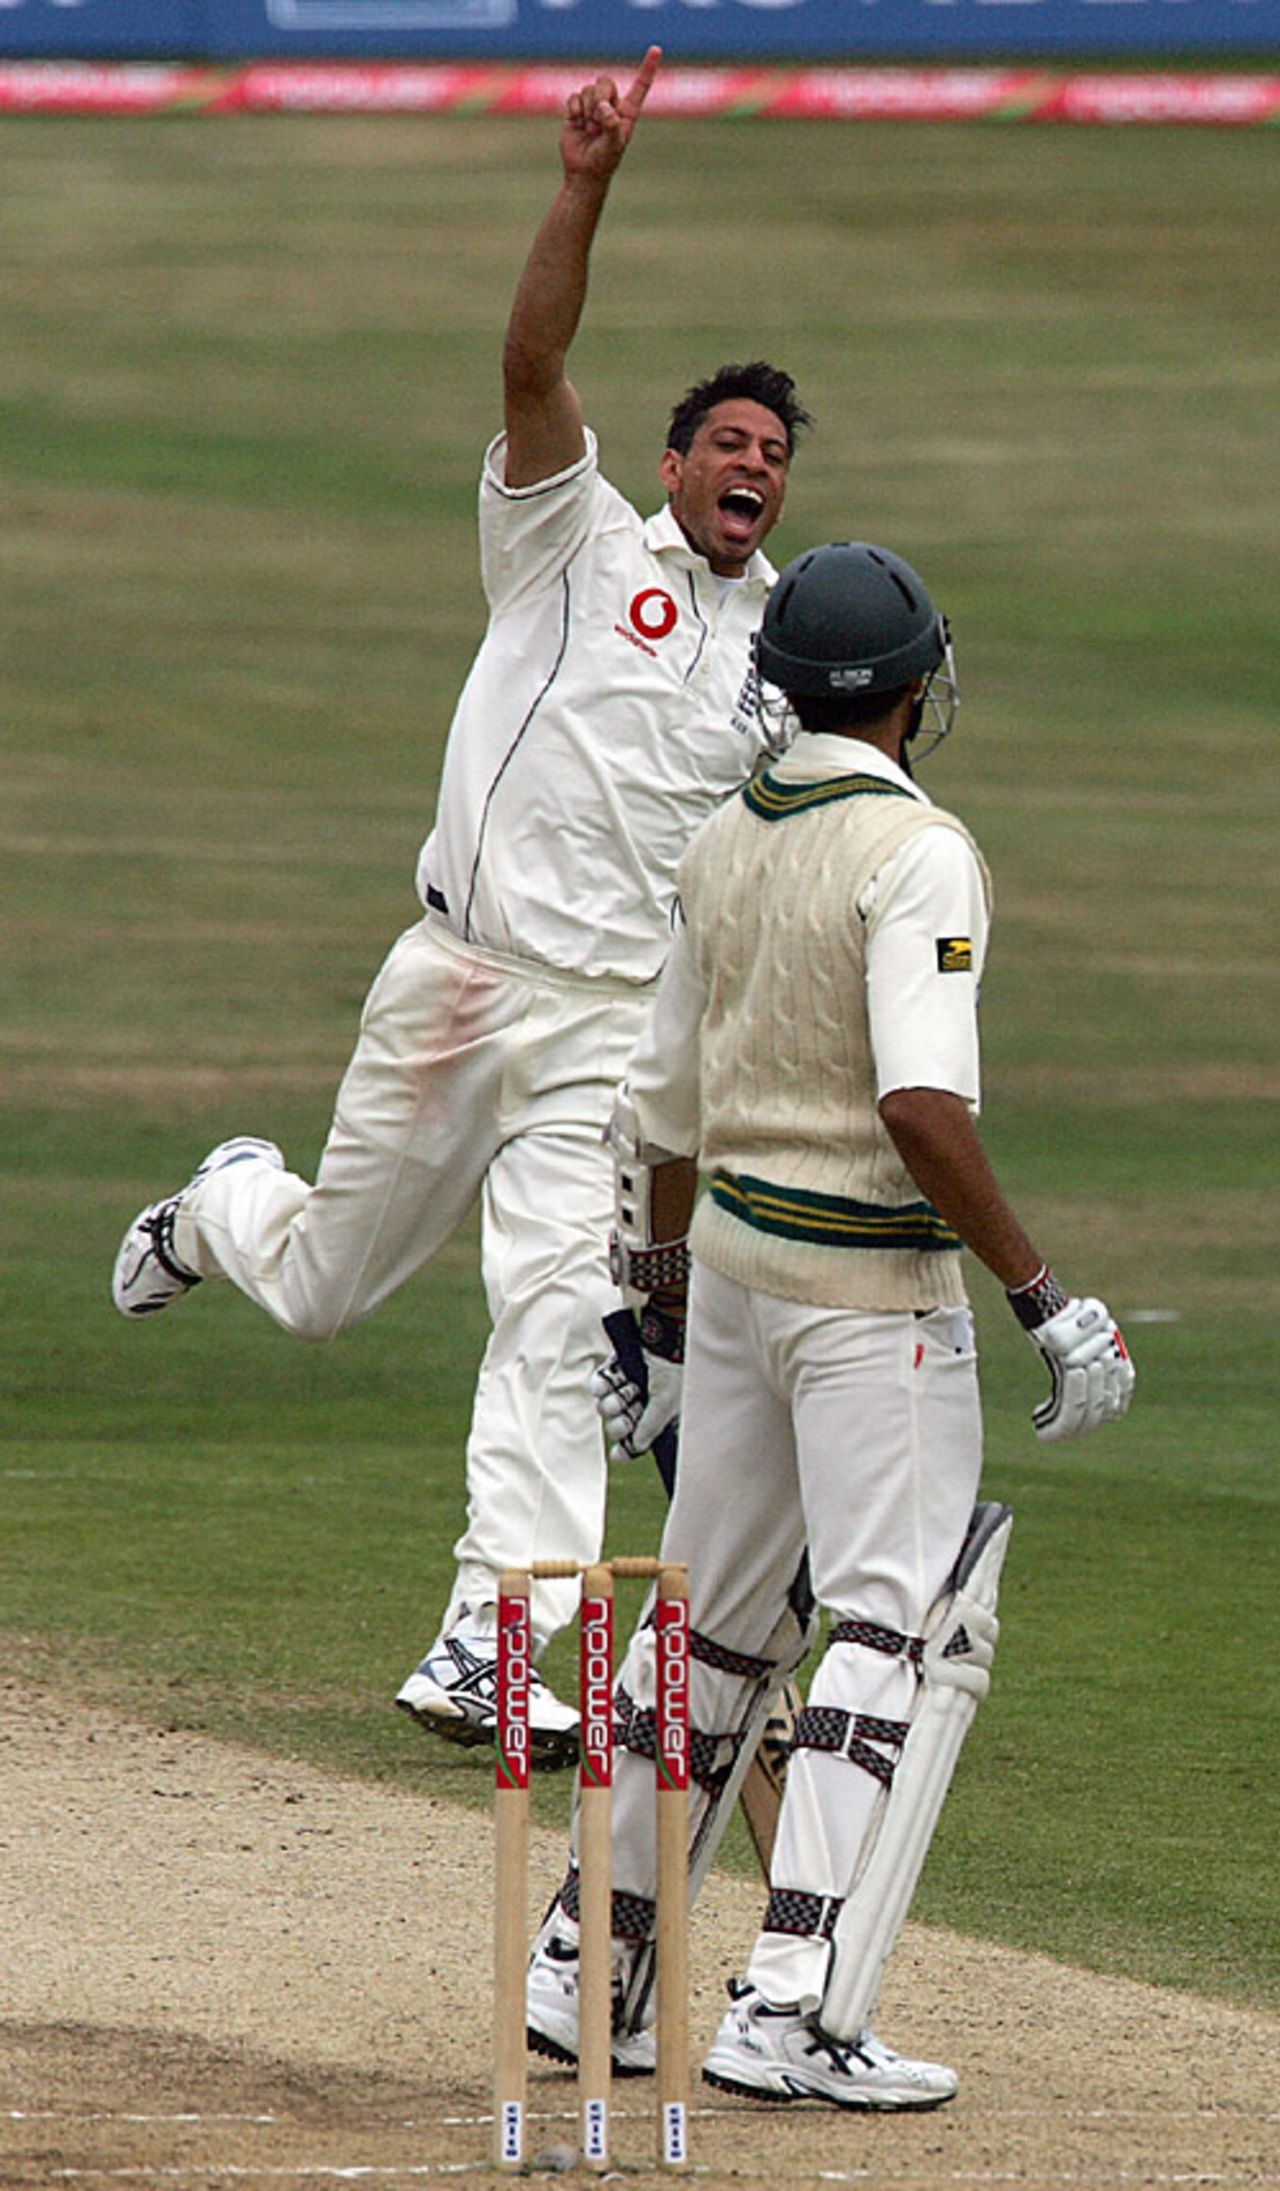 Sajid Mahmood dismisses Umar Gul, England v Pakistan, 3rd Test, Headingley, August 8, 2006